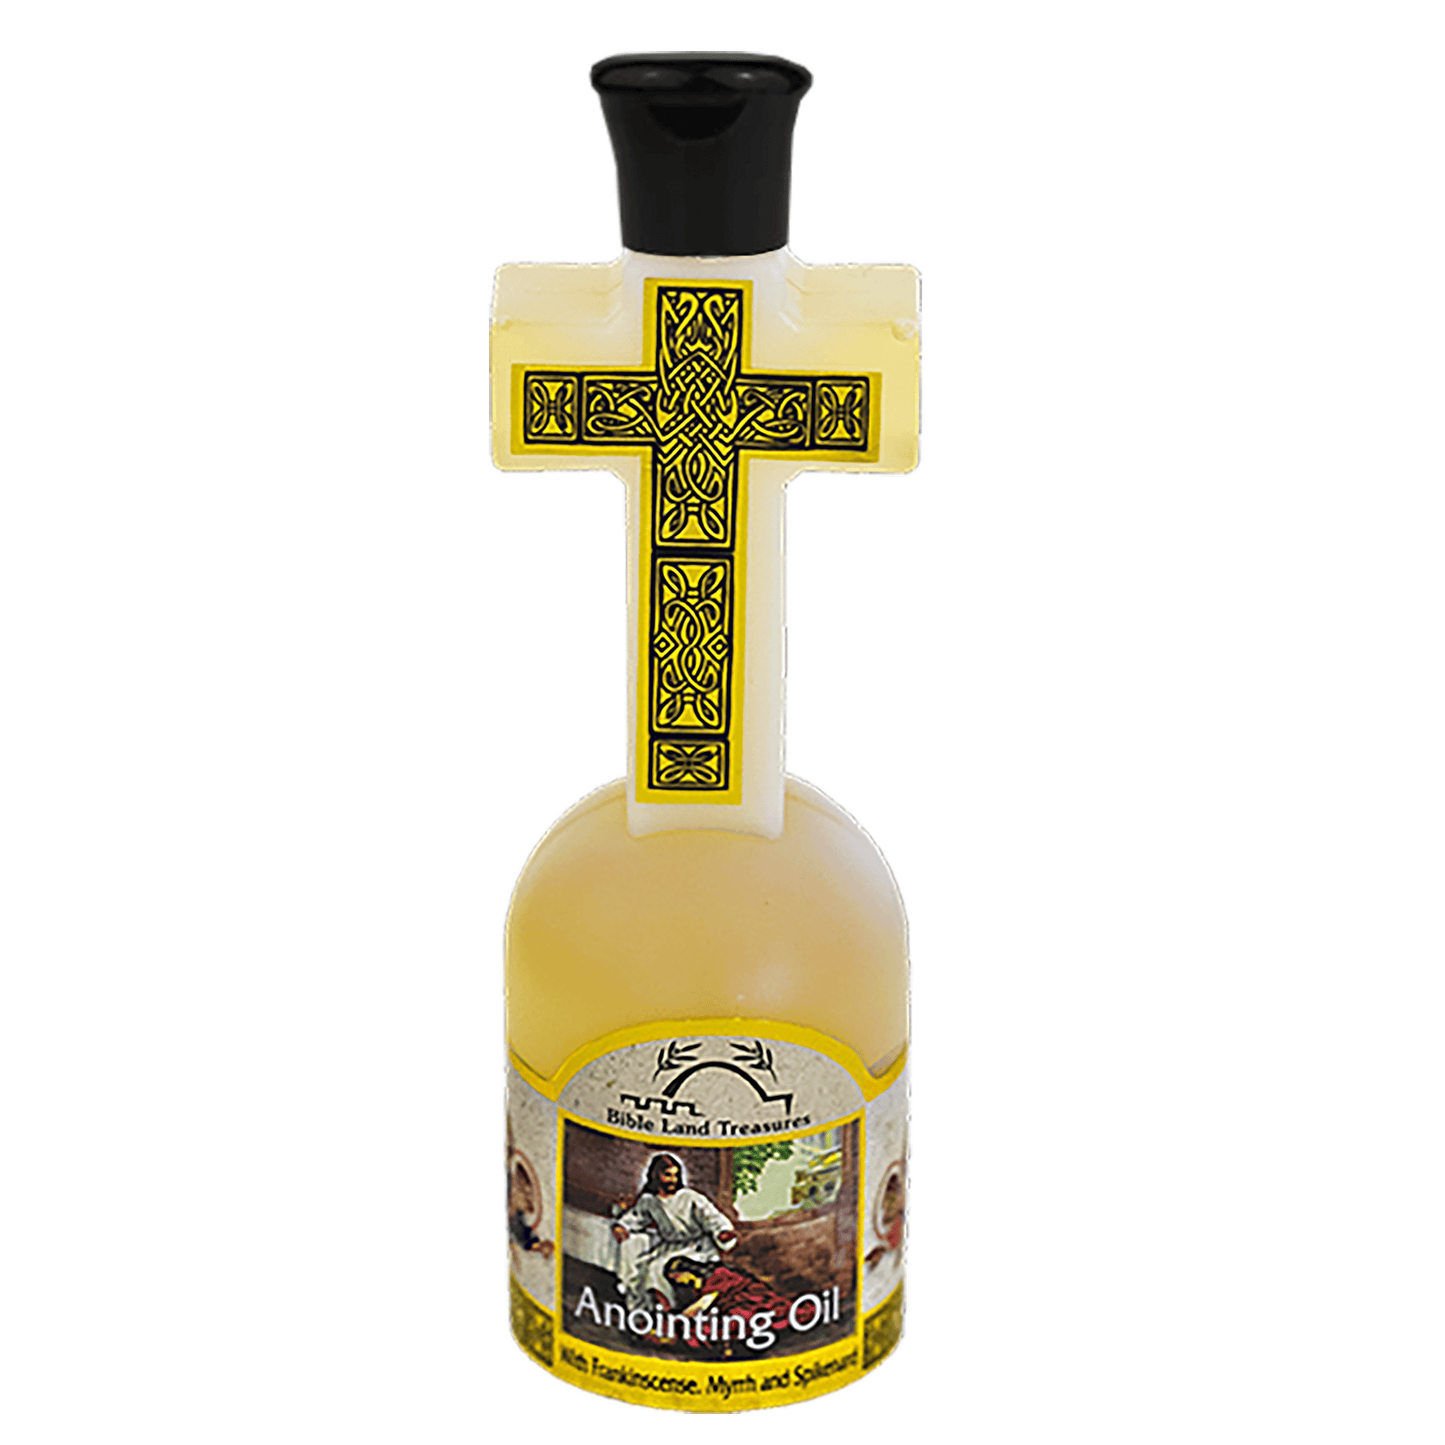 Anointing Oil in Cross Bottle